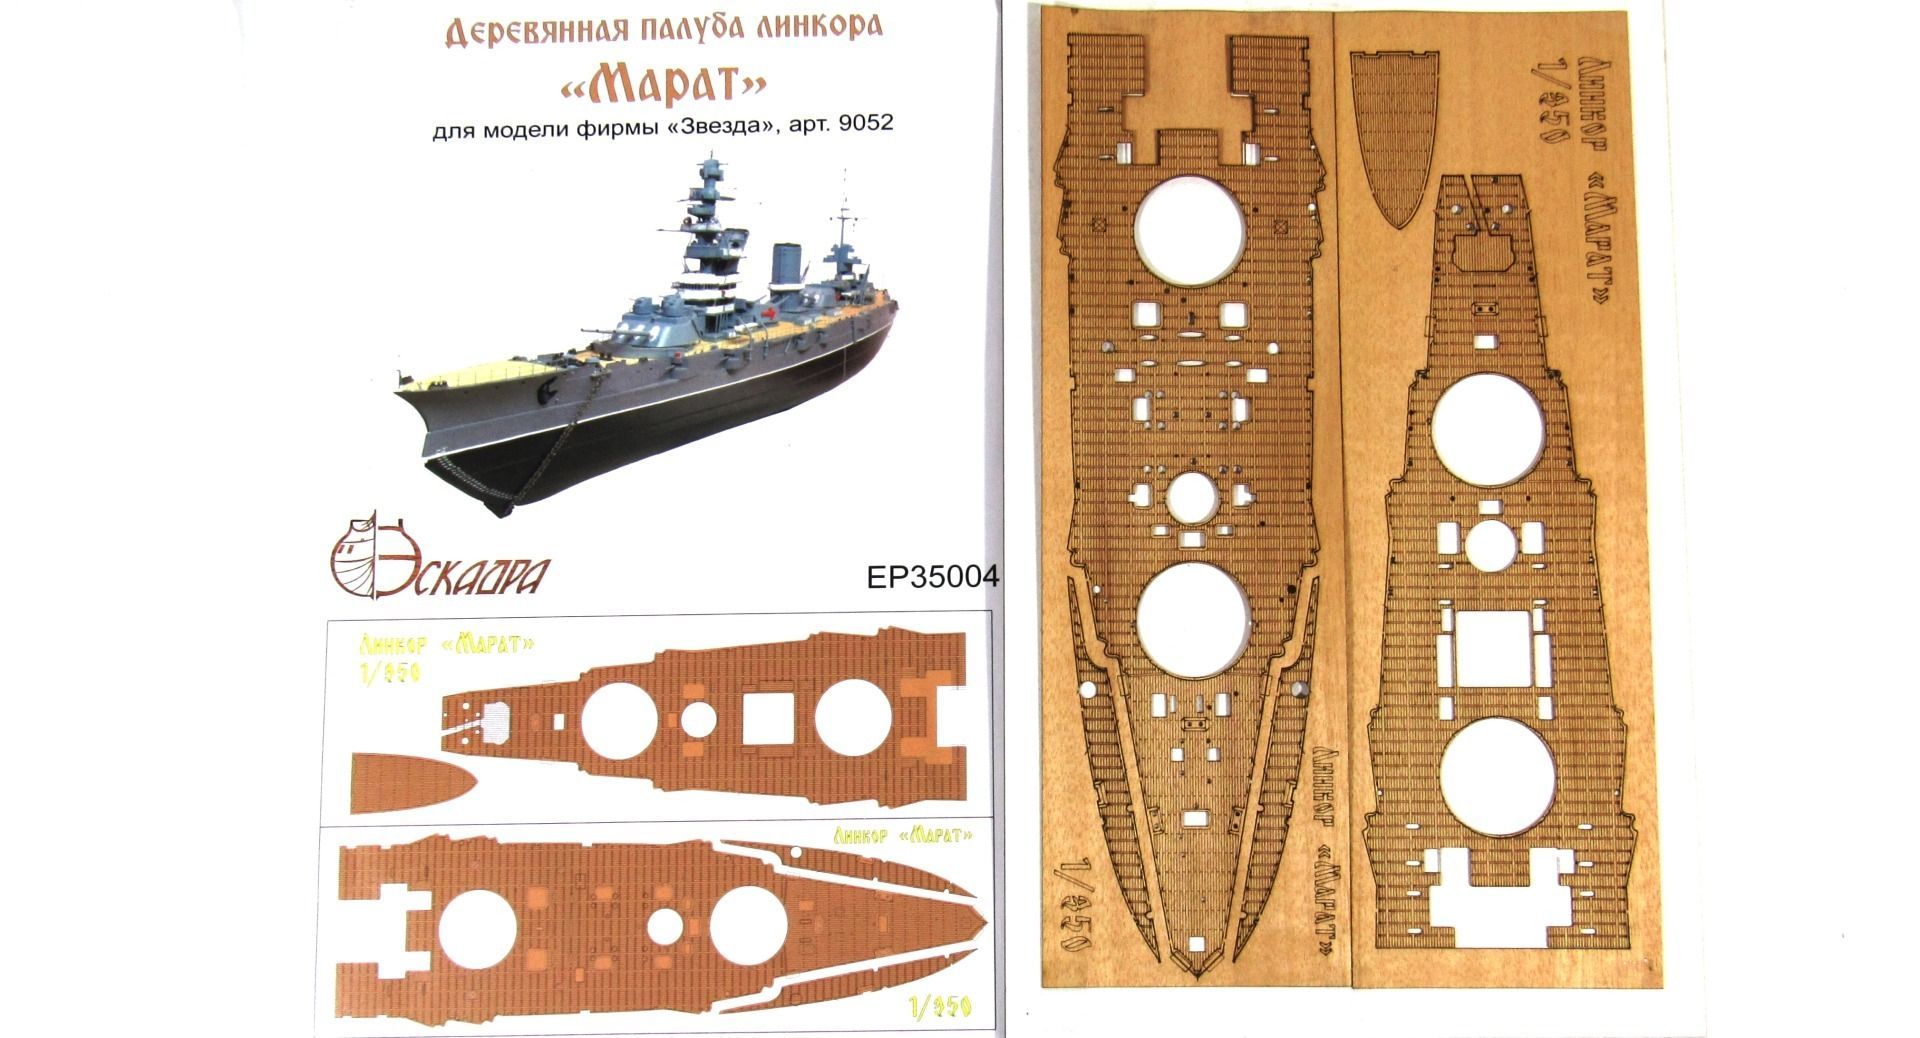 Deck of the battleship "Marat" - imodeller.store